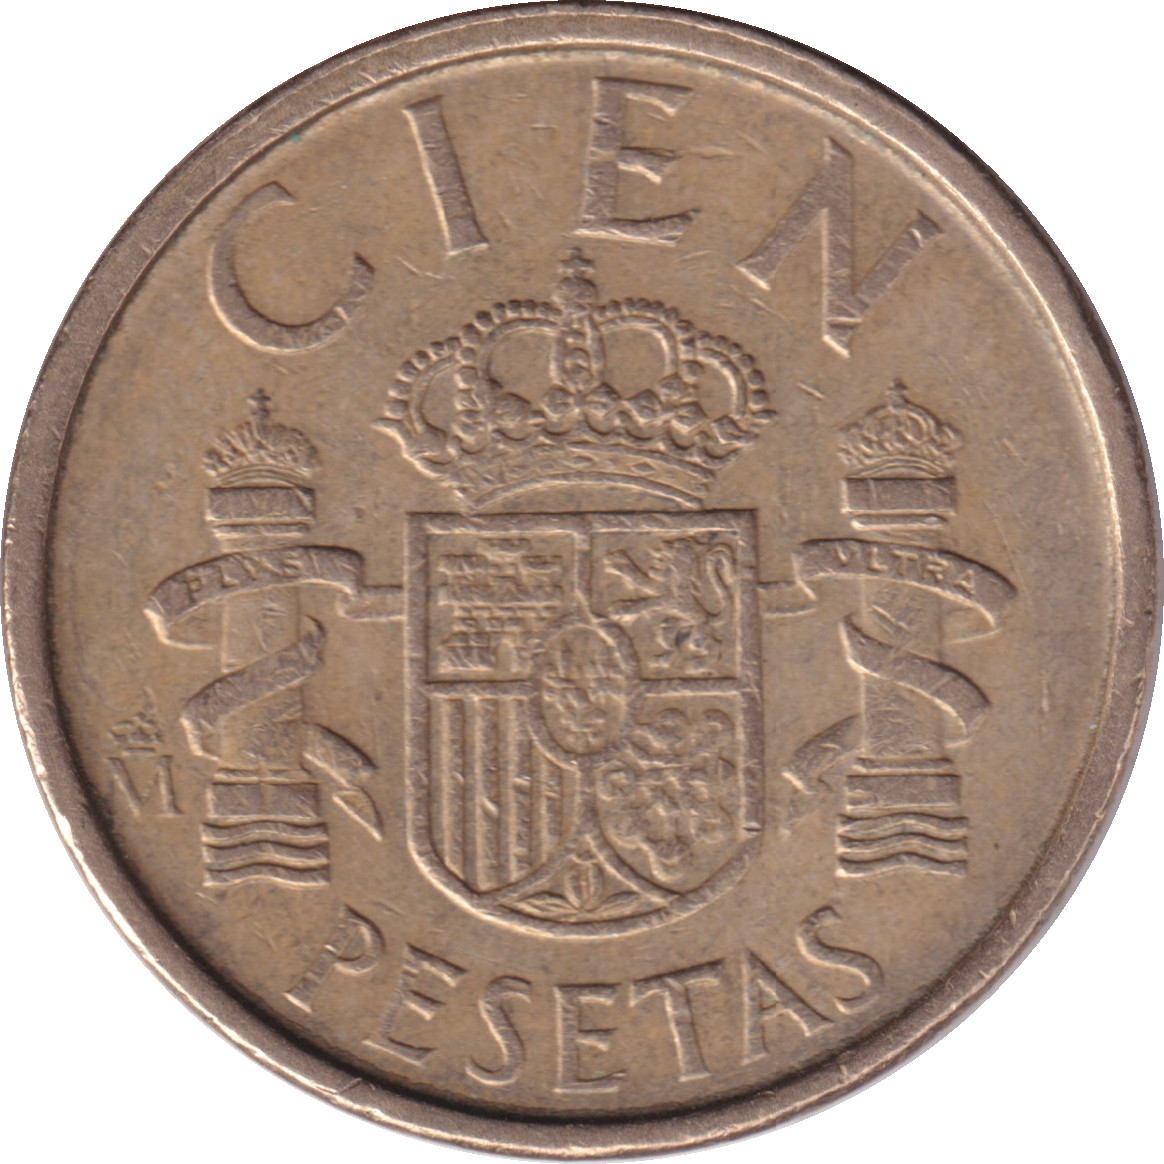 100 pesetas - Juan Carlos I - Type tardif - CIEN PESETAS